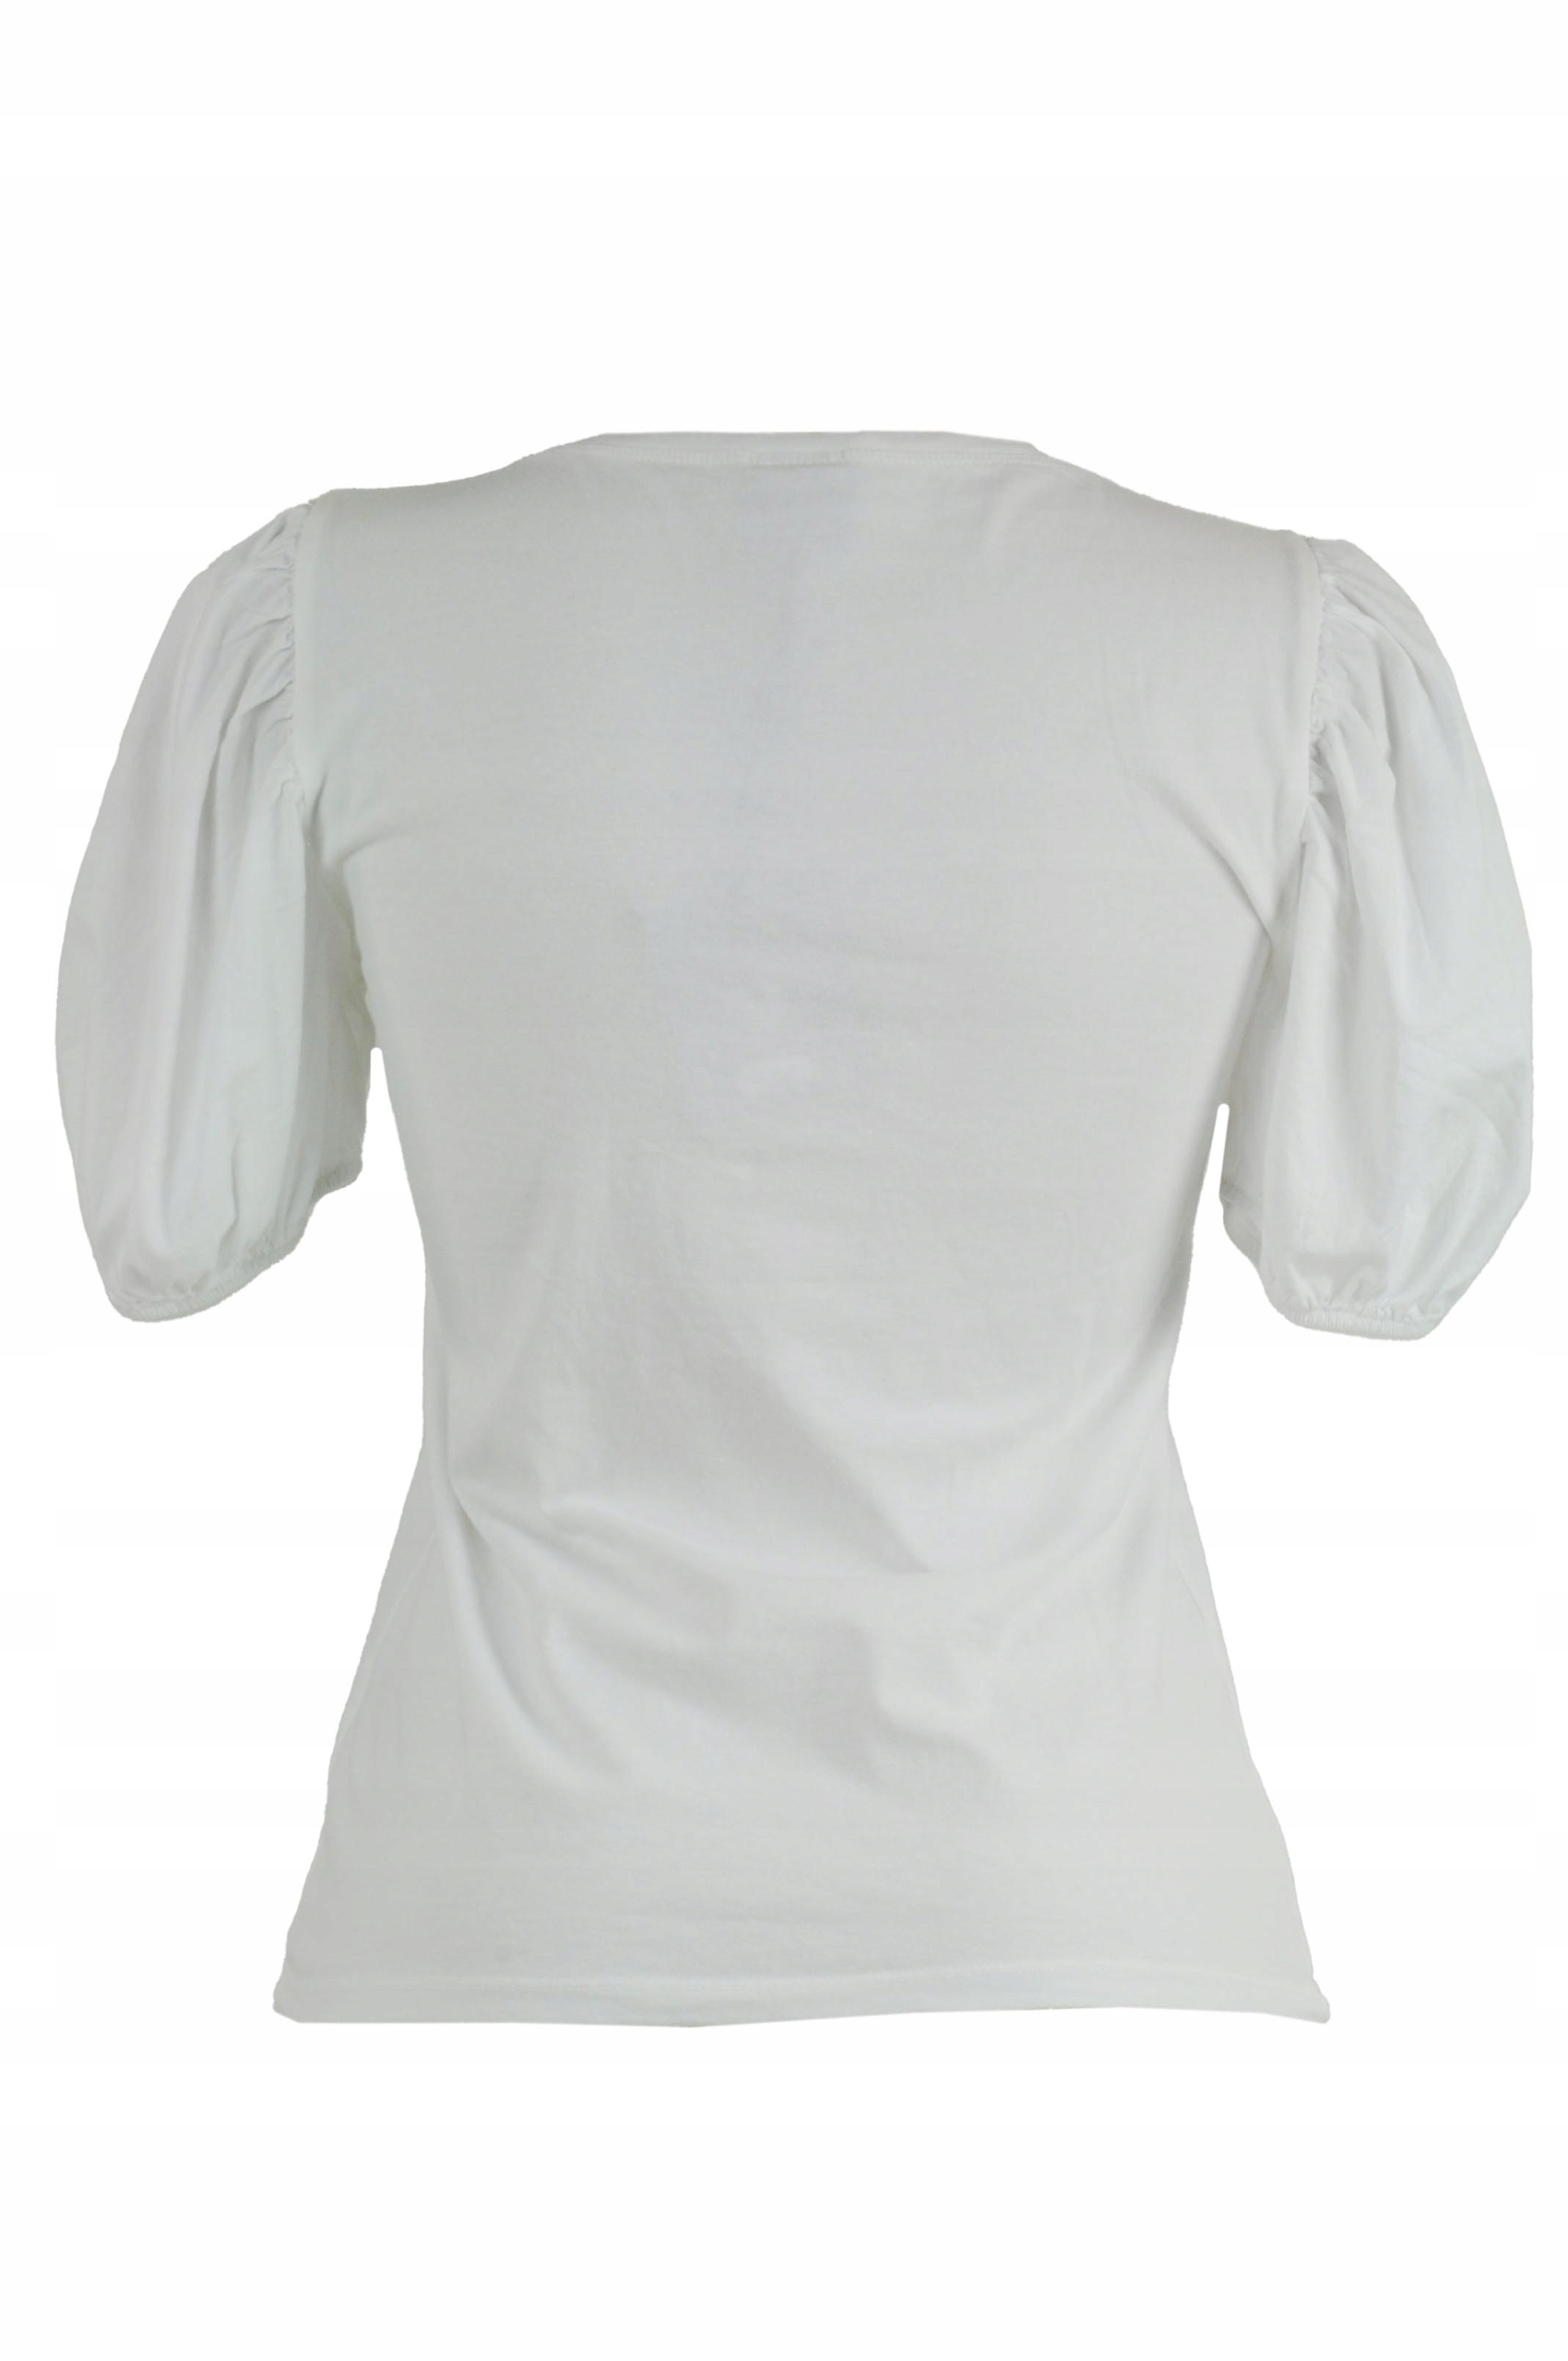 Moda Bluzki Transparentne bluzki NÜ Denmark N\u00dc Denmark Transparentna bluzka bia\u0142y Imprezowy wygl\u0105d 